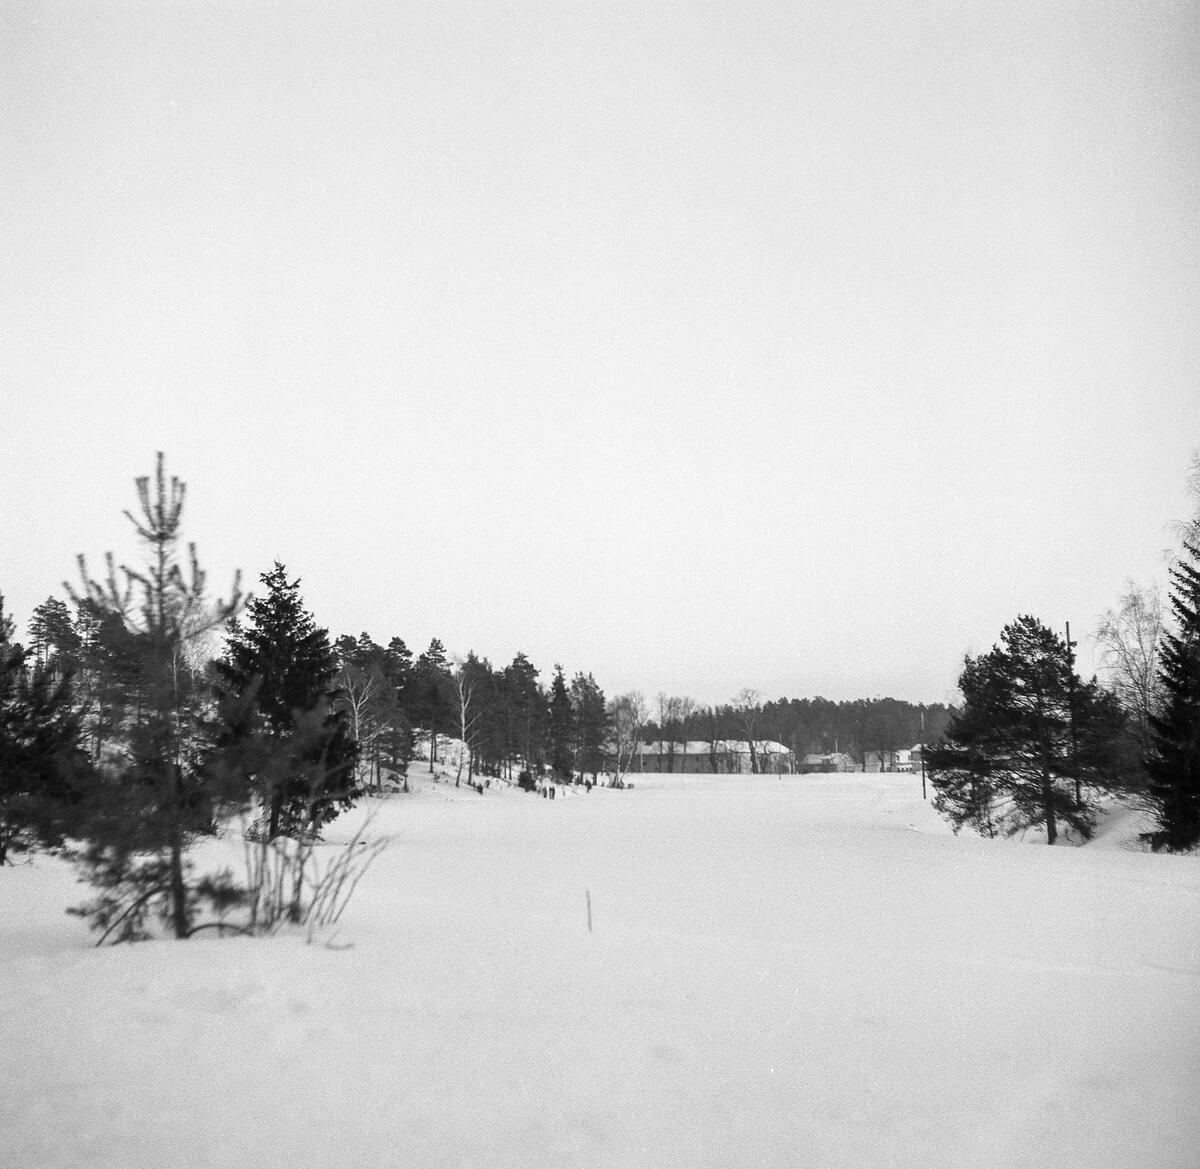 Bilden tagen från Flottiljvägen och visar husen mellan Djursholmsvägen och Slottsvägen i fonden.
Observera att i högra kanten går den å som kommer från ängarna vid Galoppfältet och som numera är täckt.